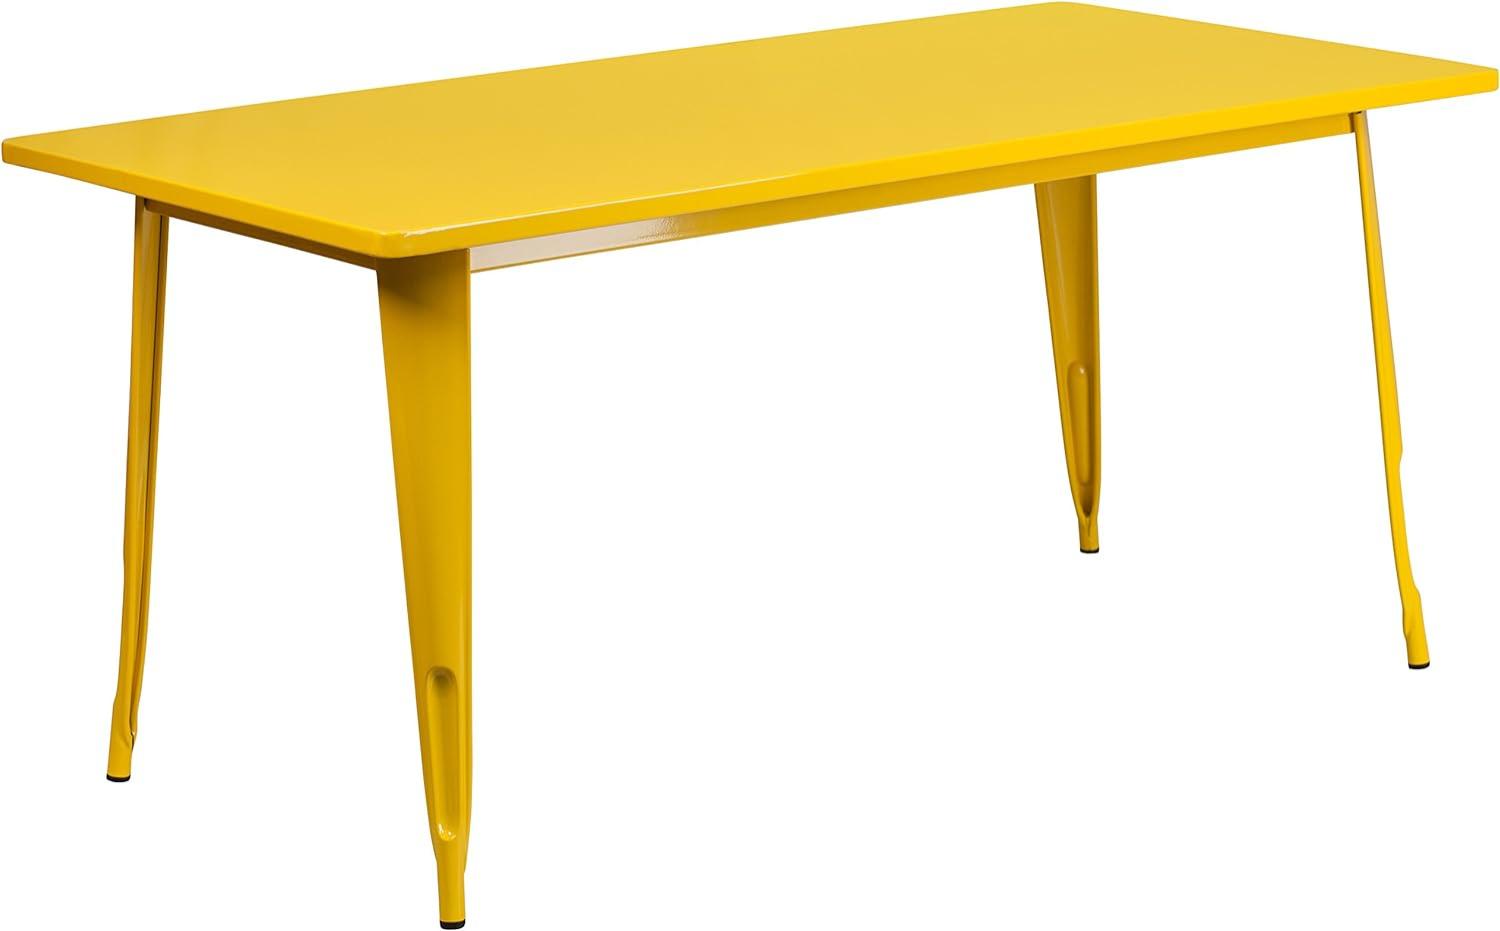 Flash Furniture Charis Commercial Grade 80 x 160 cm rechteckiger gelber Metalltisch für drinnen und draußen Bild 1